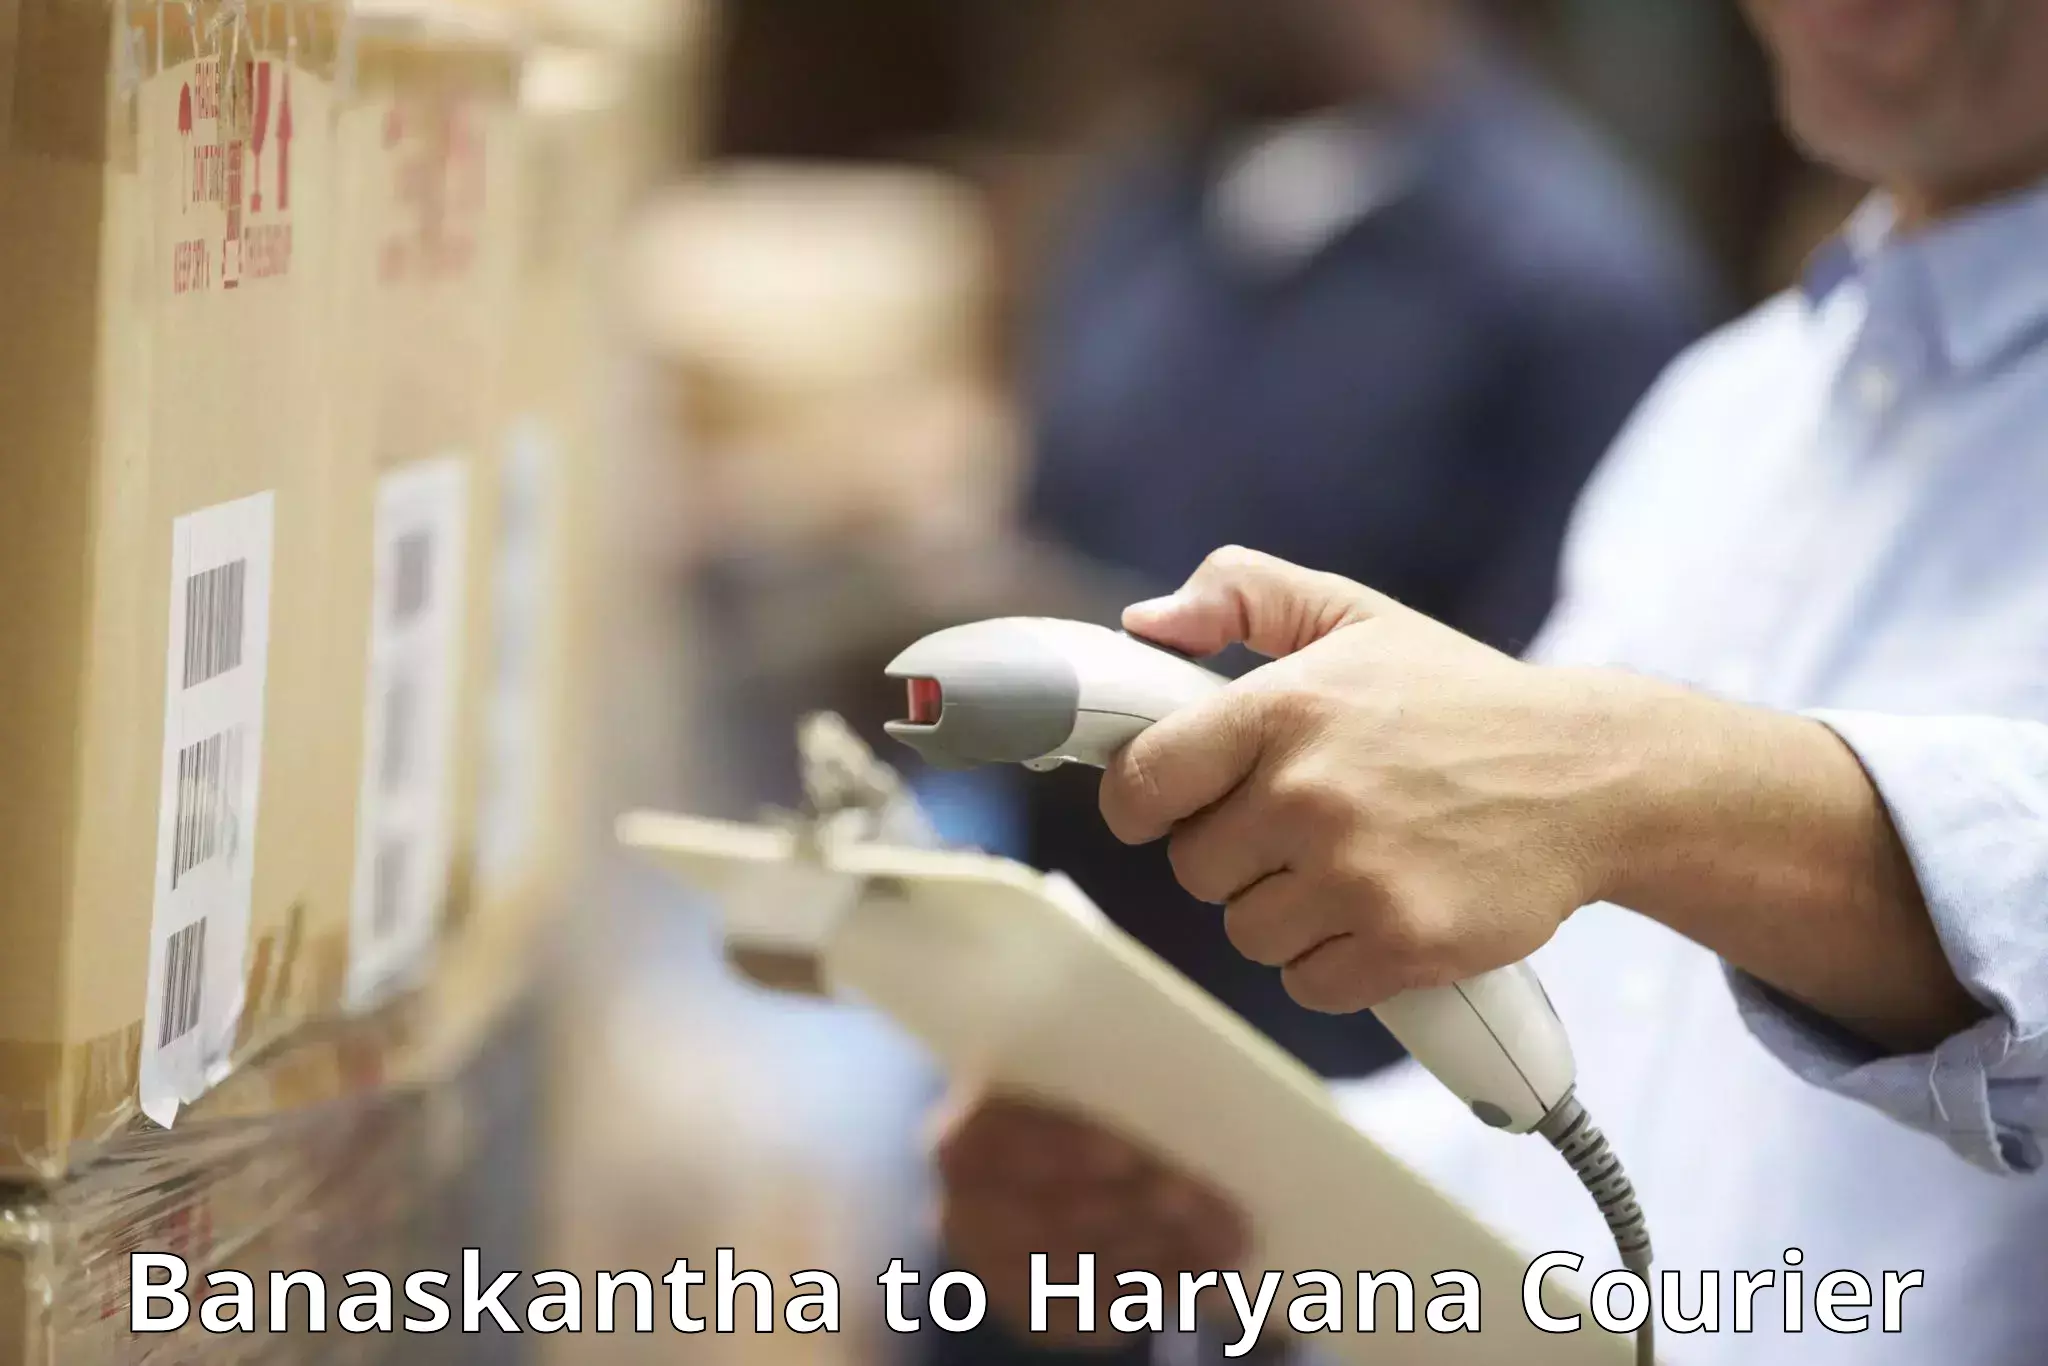 Baggage delivery support Banaskantha to Hansi